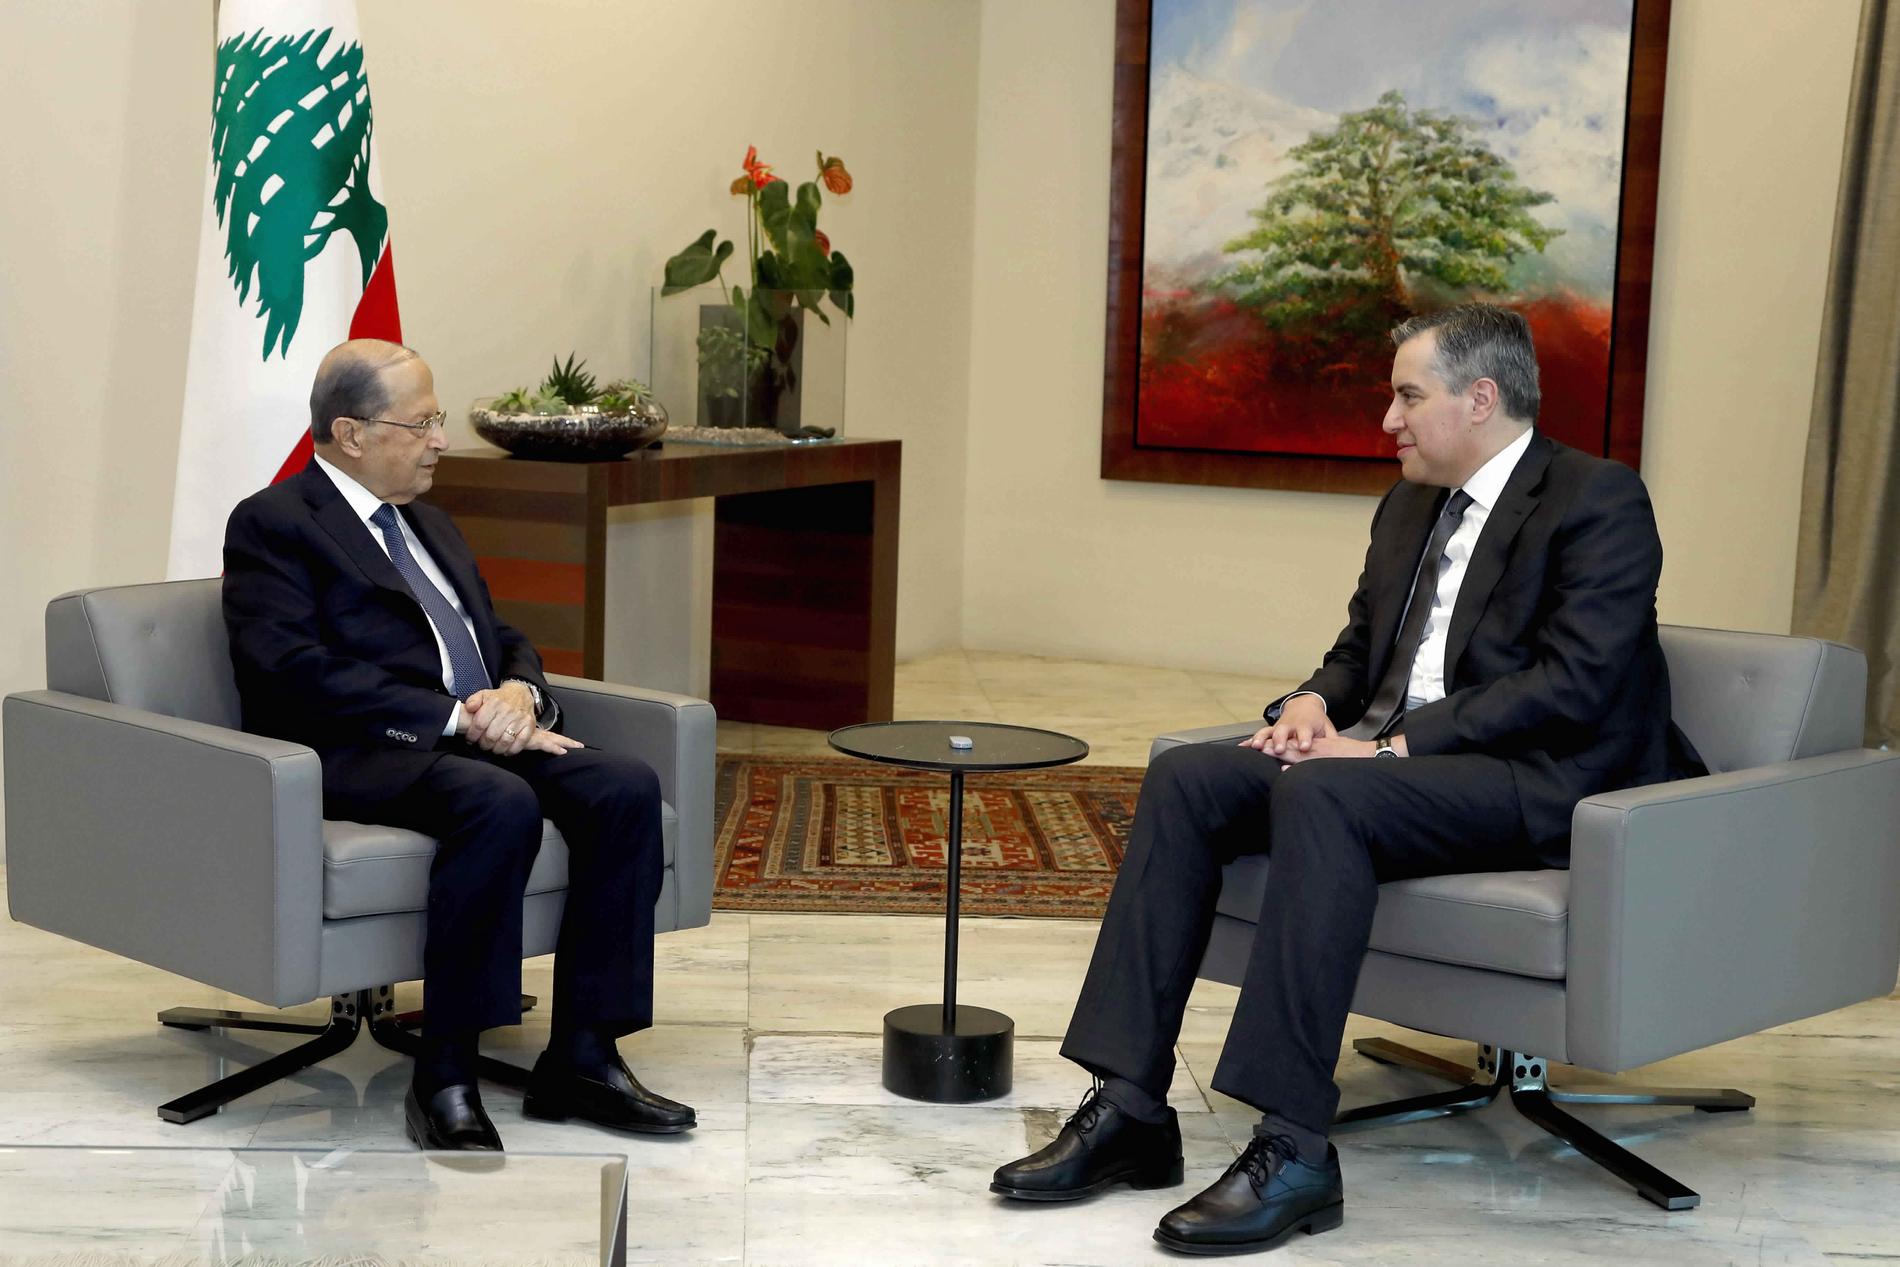 Michel Aoun, till vänster, har flera gånger tagit emot Mustafa Adib för att höra hur det går med regeringsbildningen. Men nu är han pessimistisk. Bilden är tagen den 14 september.